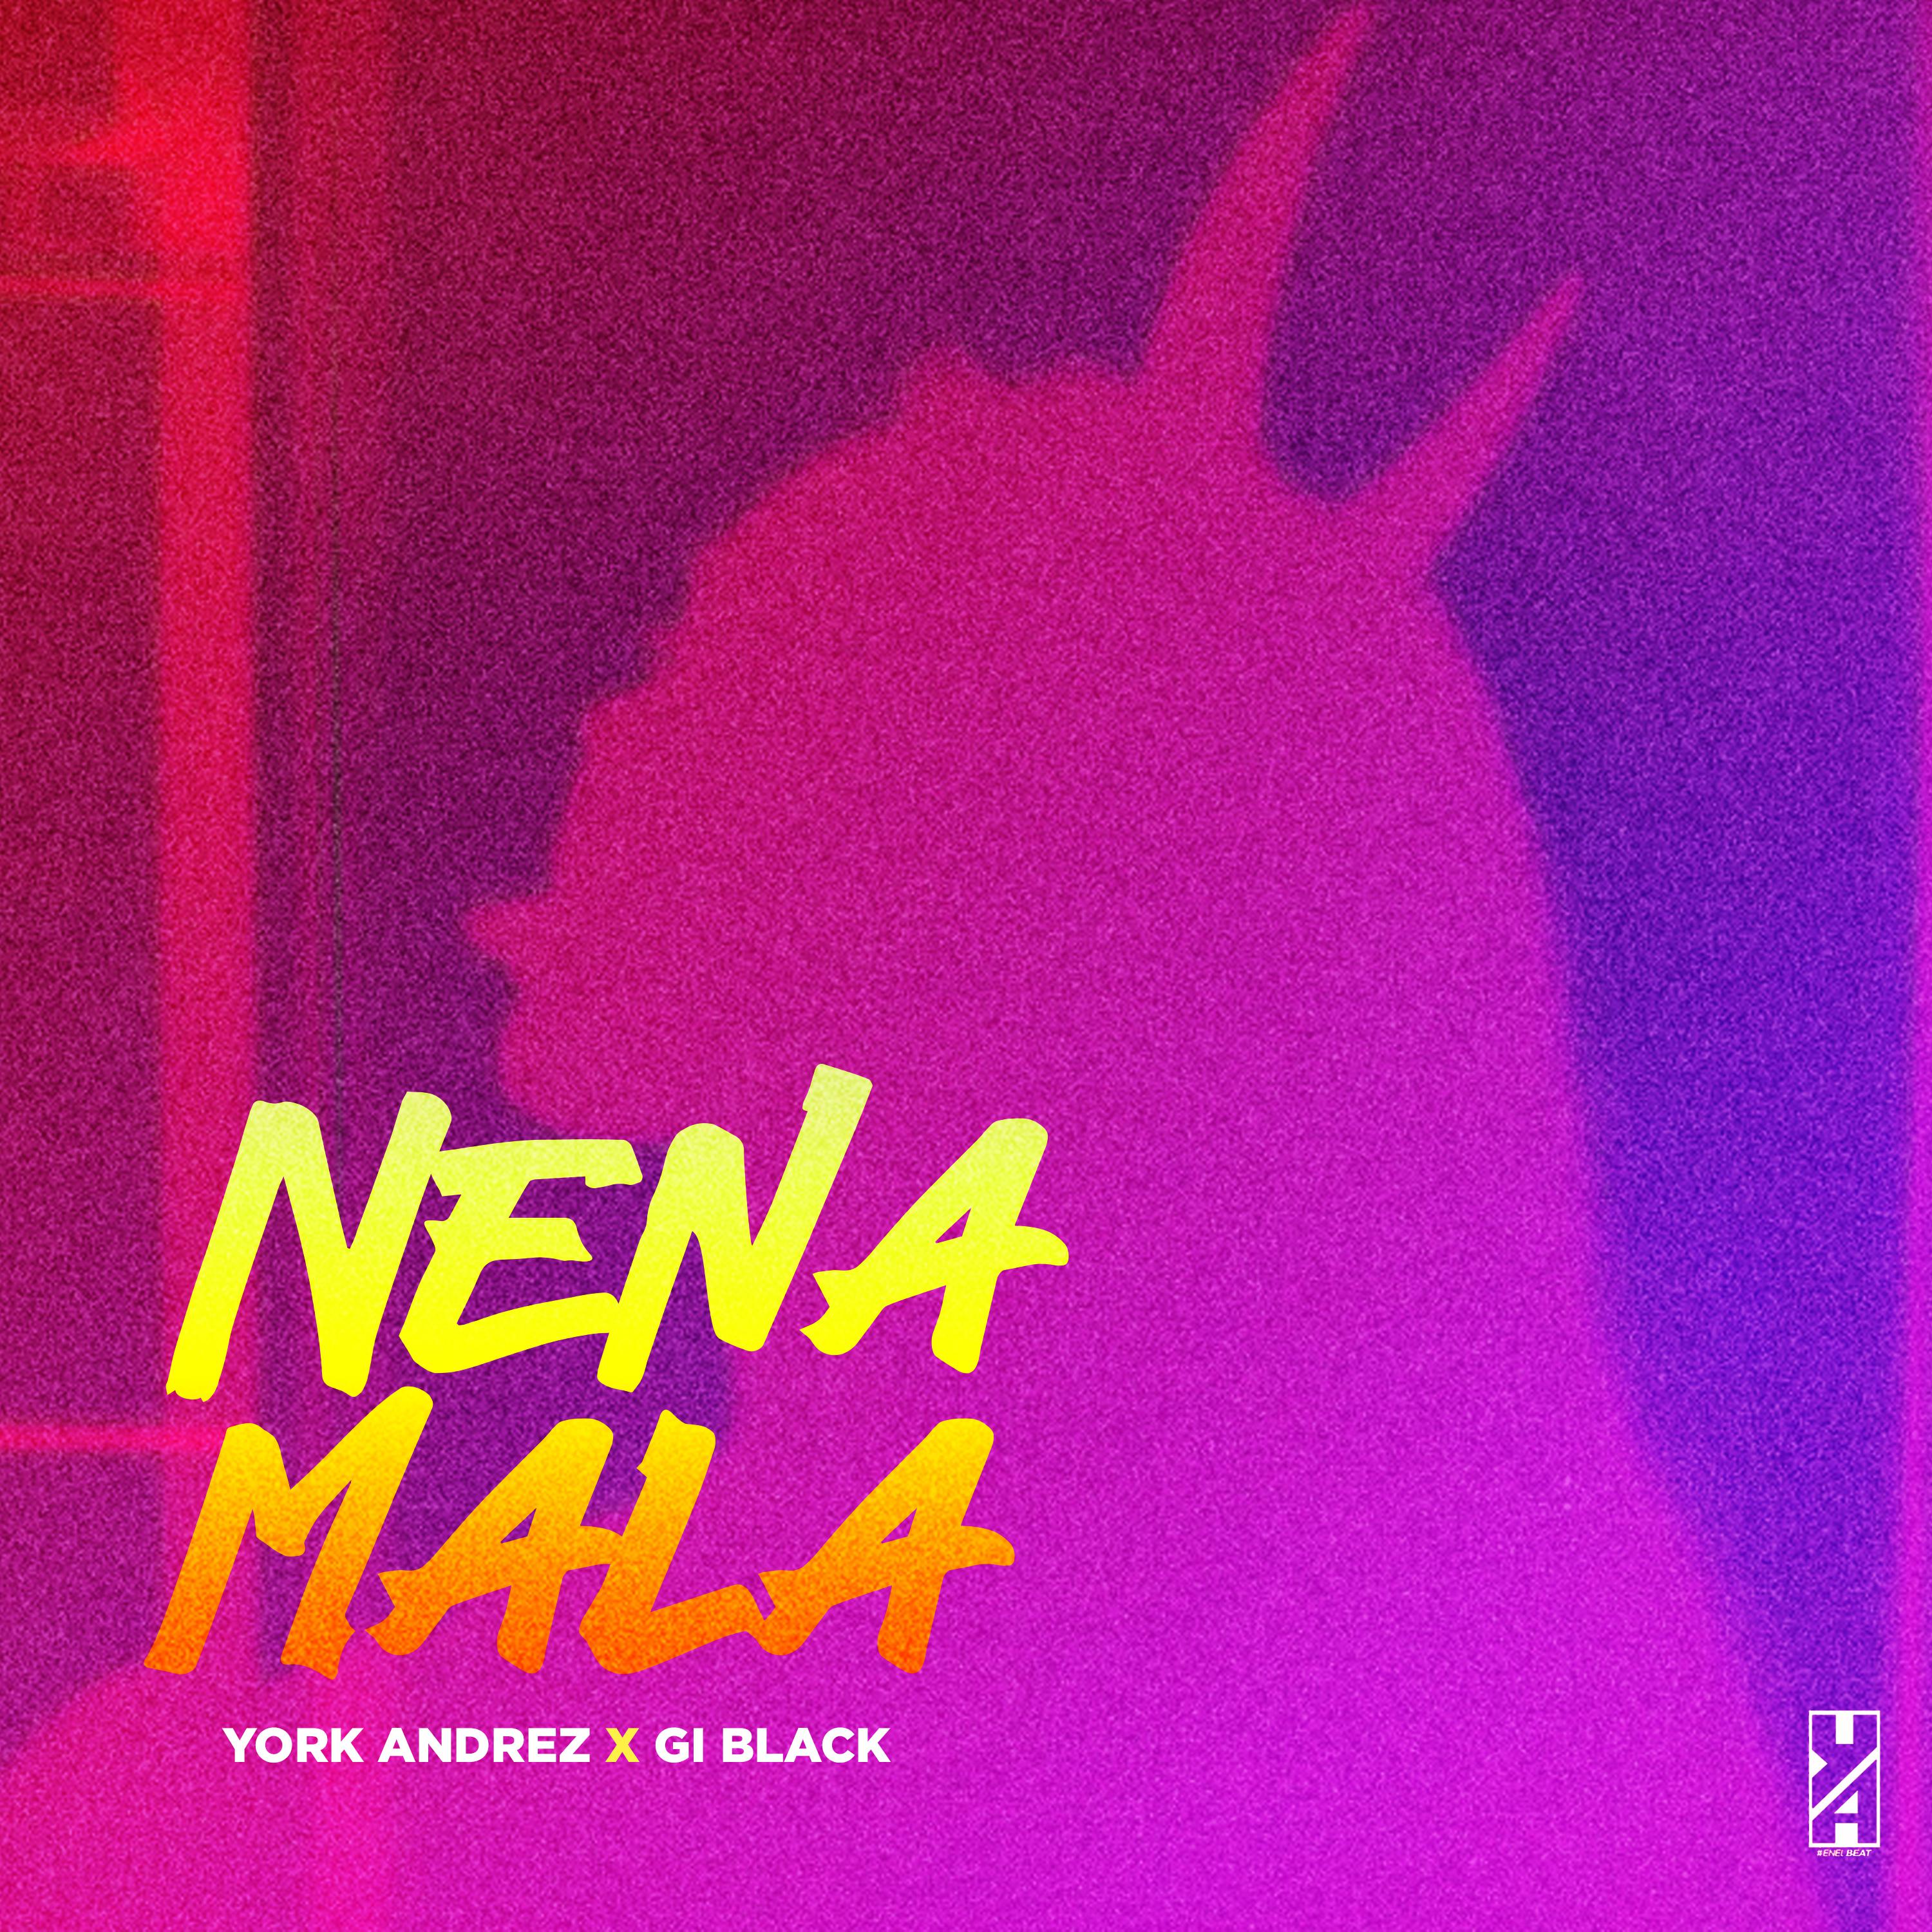 Постер альбома Nena Mala